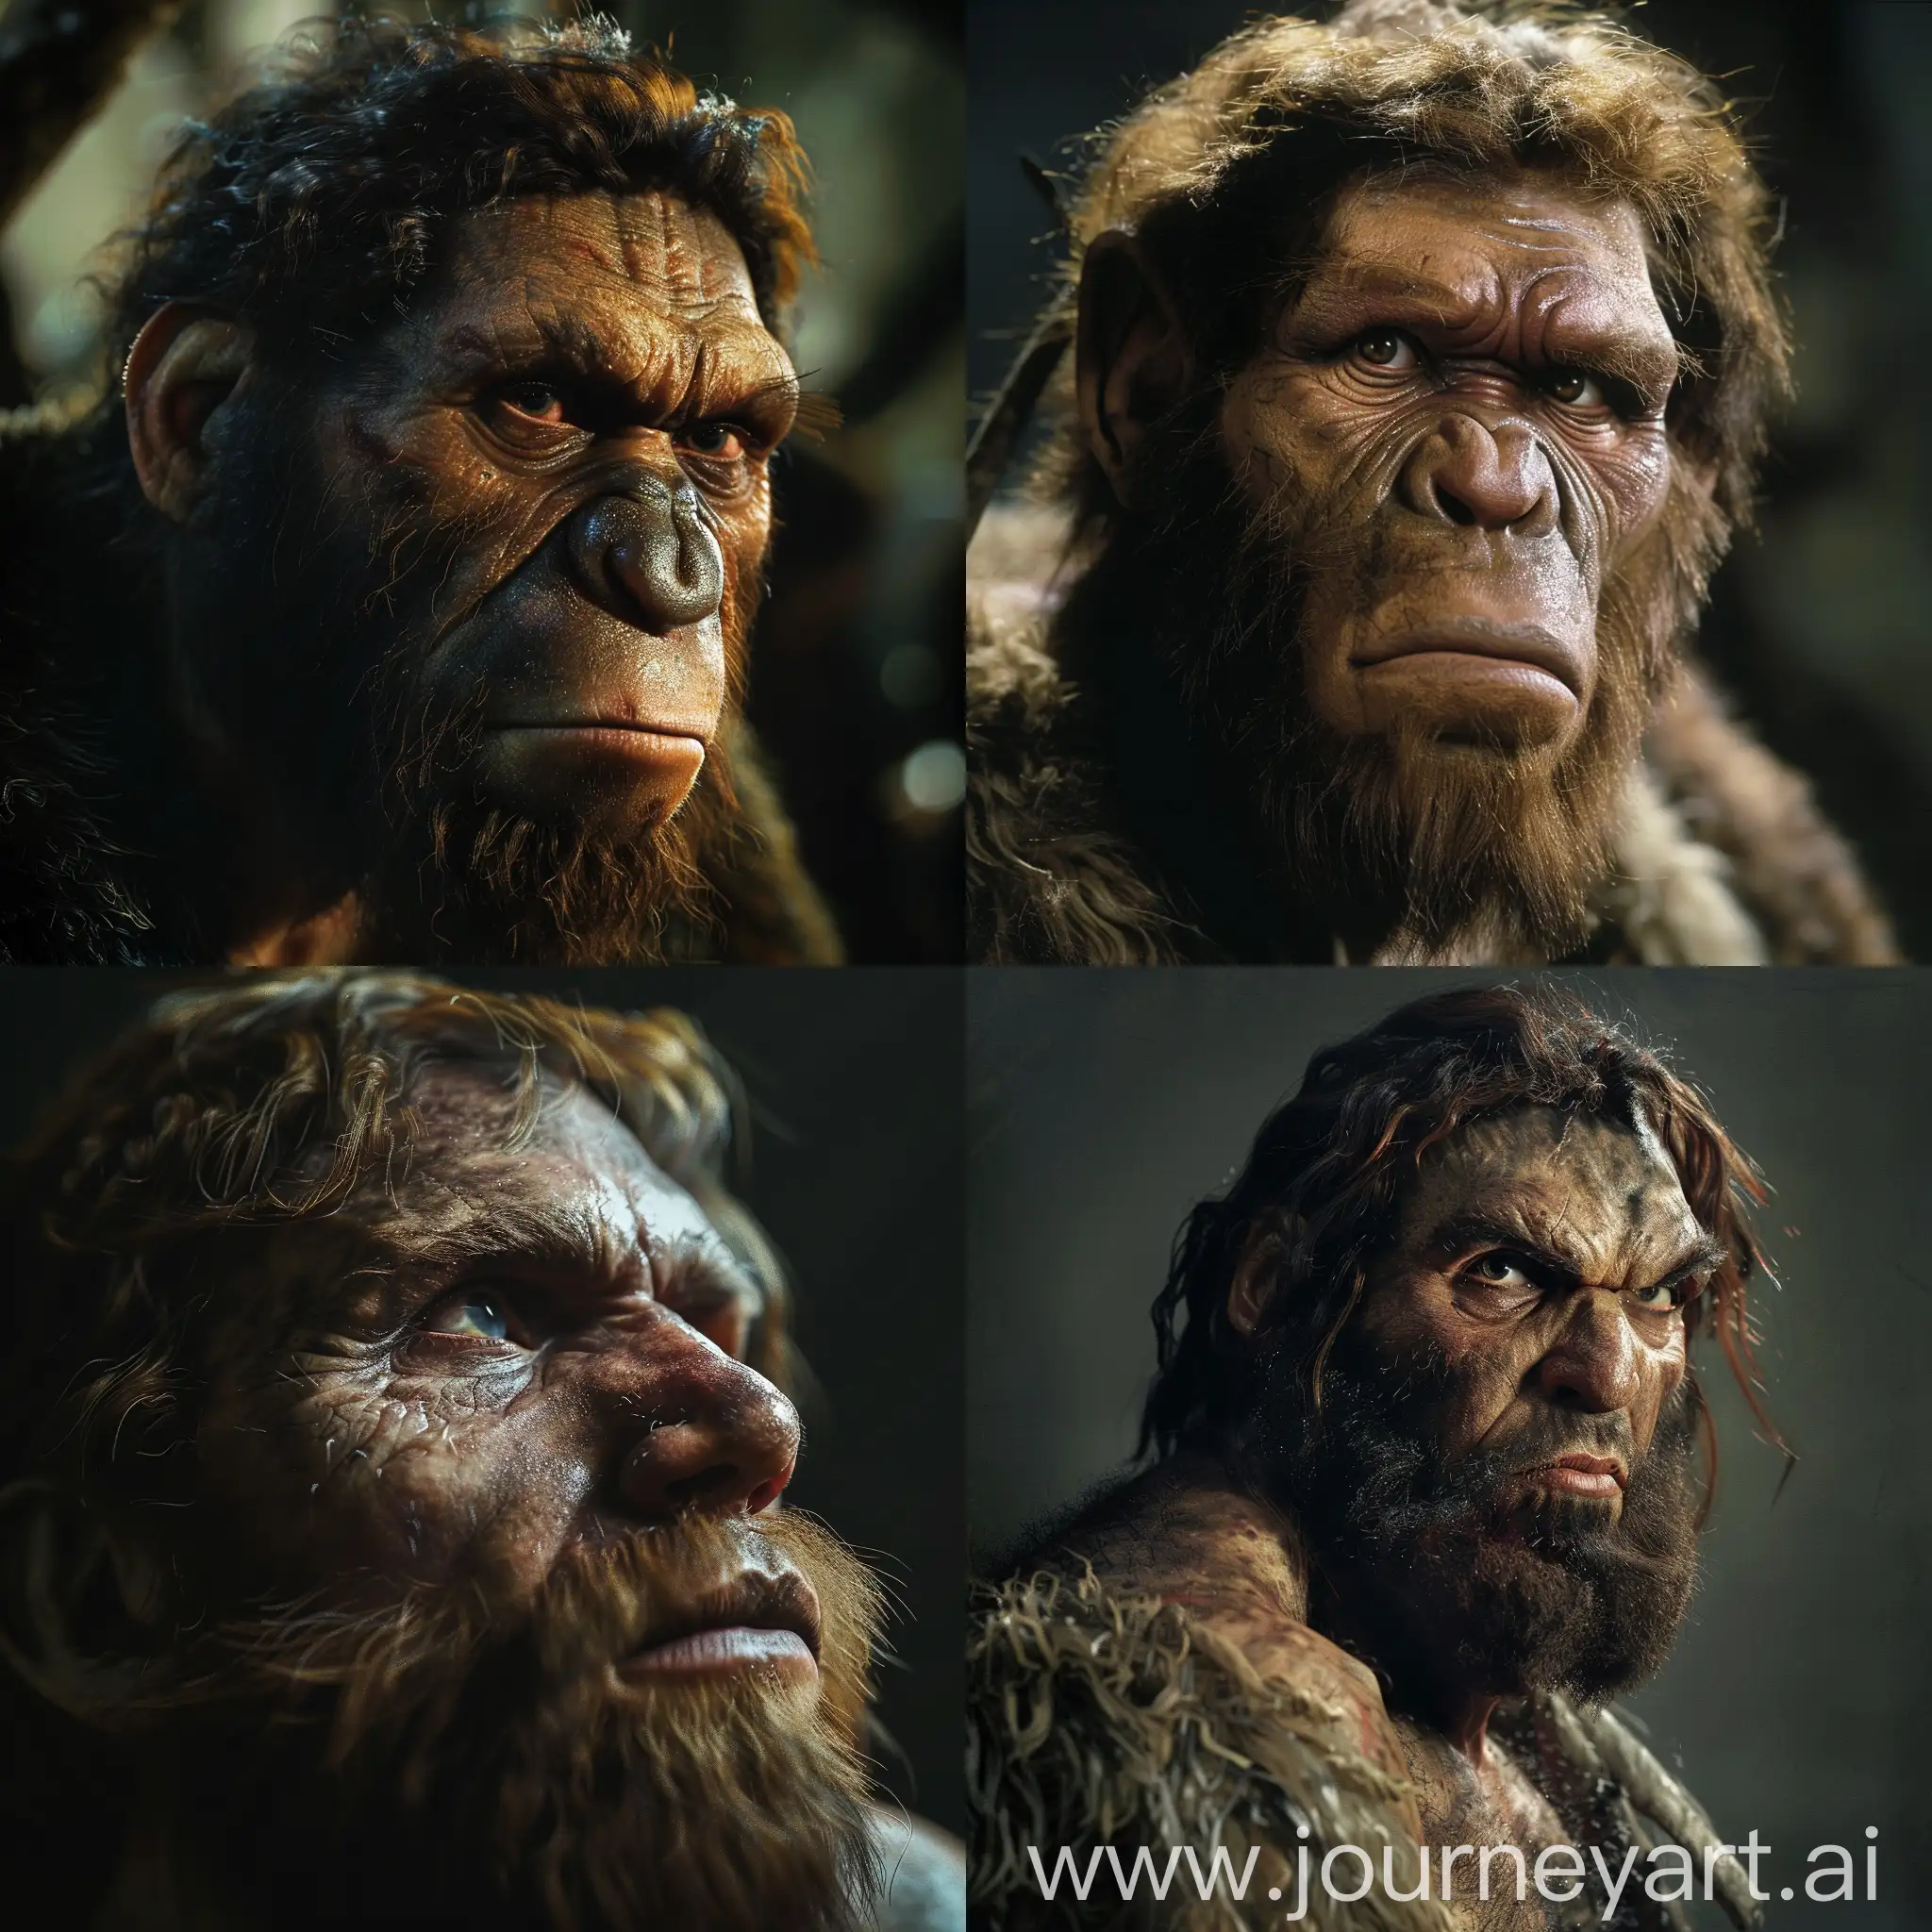 Generami un'immagine di come dovrebbe apparire davanti a me un uomo di Neanderthal